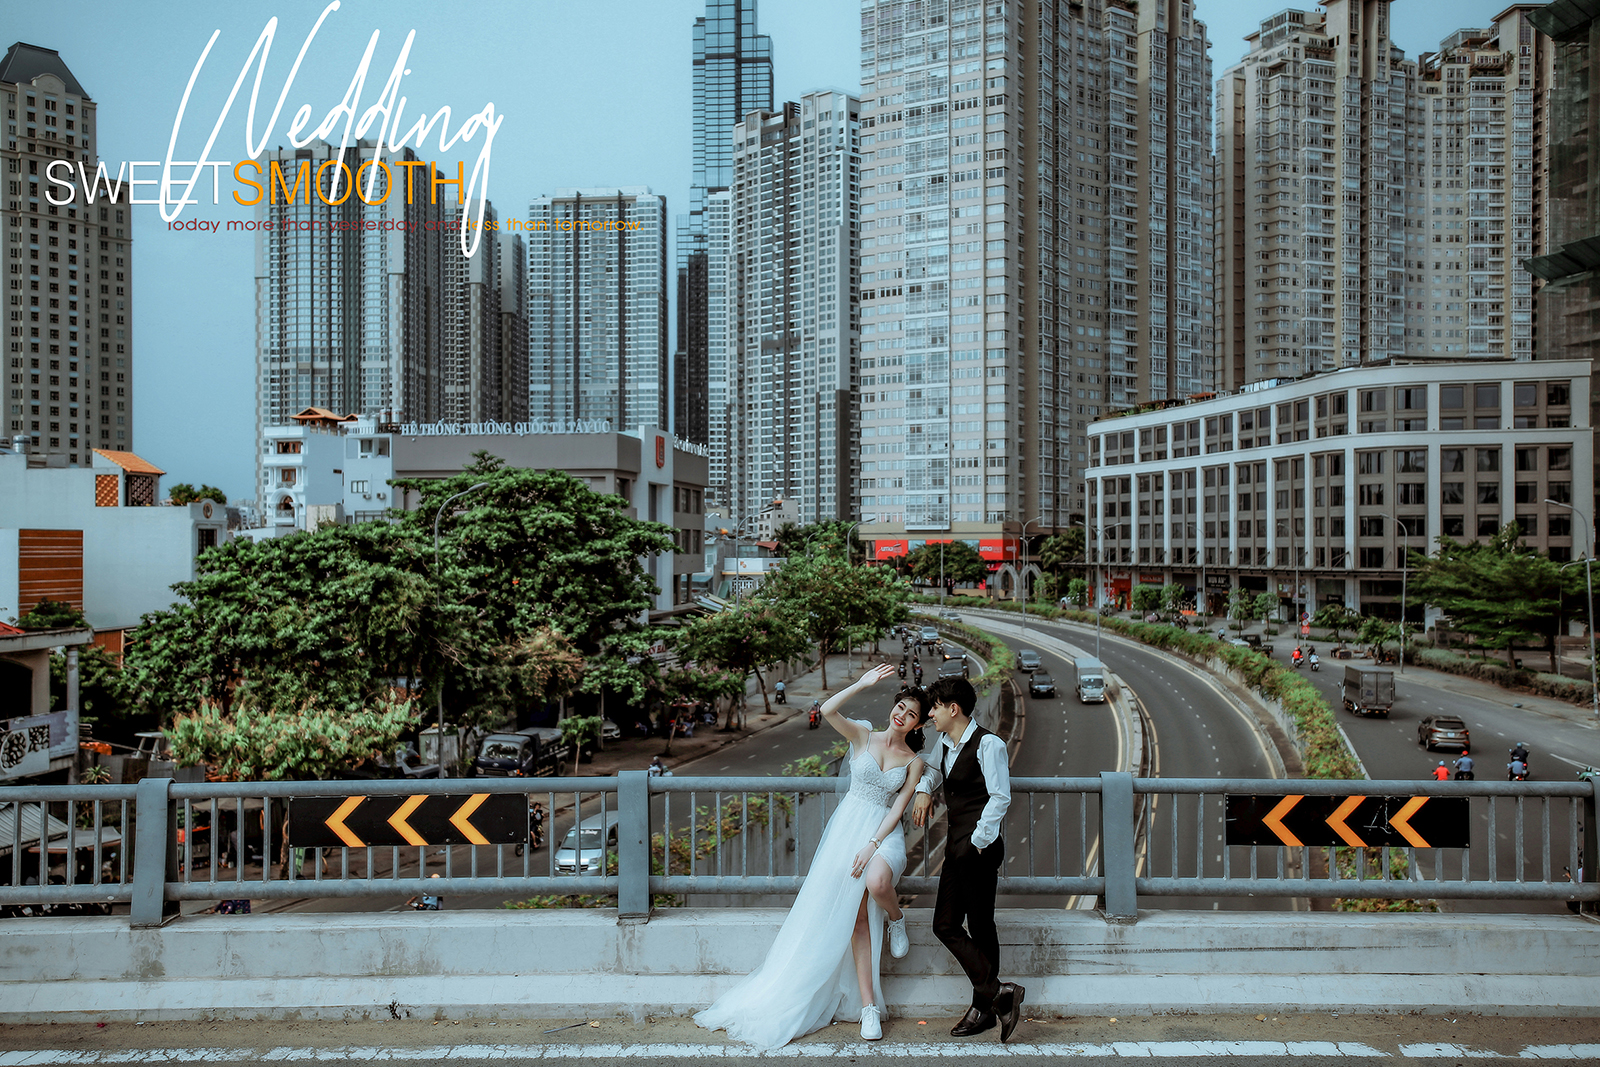 Xếp hạng 10 studio chụp ảnh cưới đẹp nhất Thành phố Hồ Chí Minh - XiRum Wedding